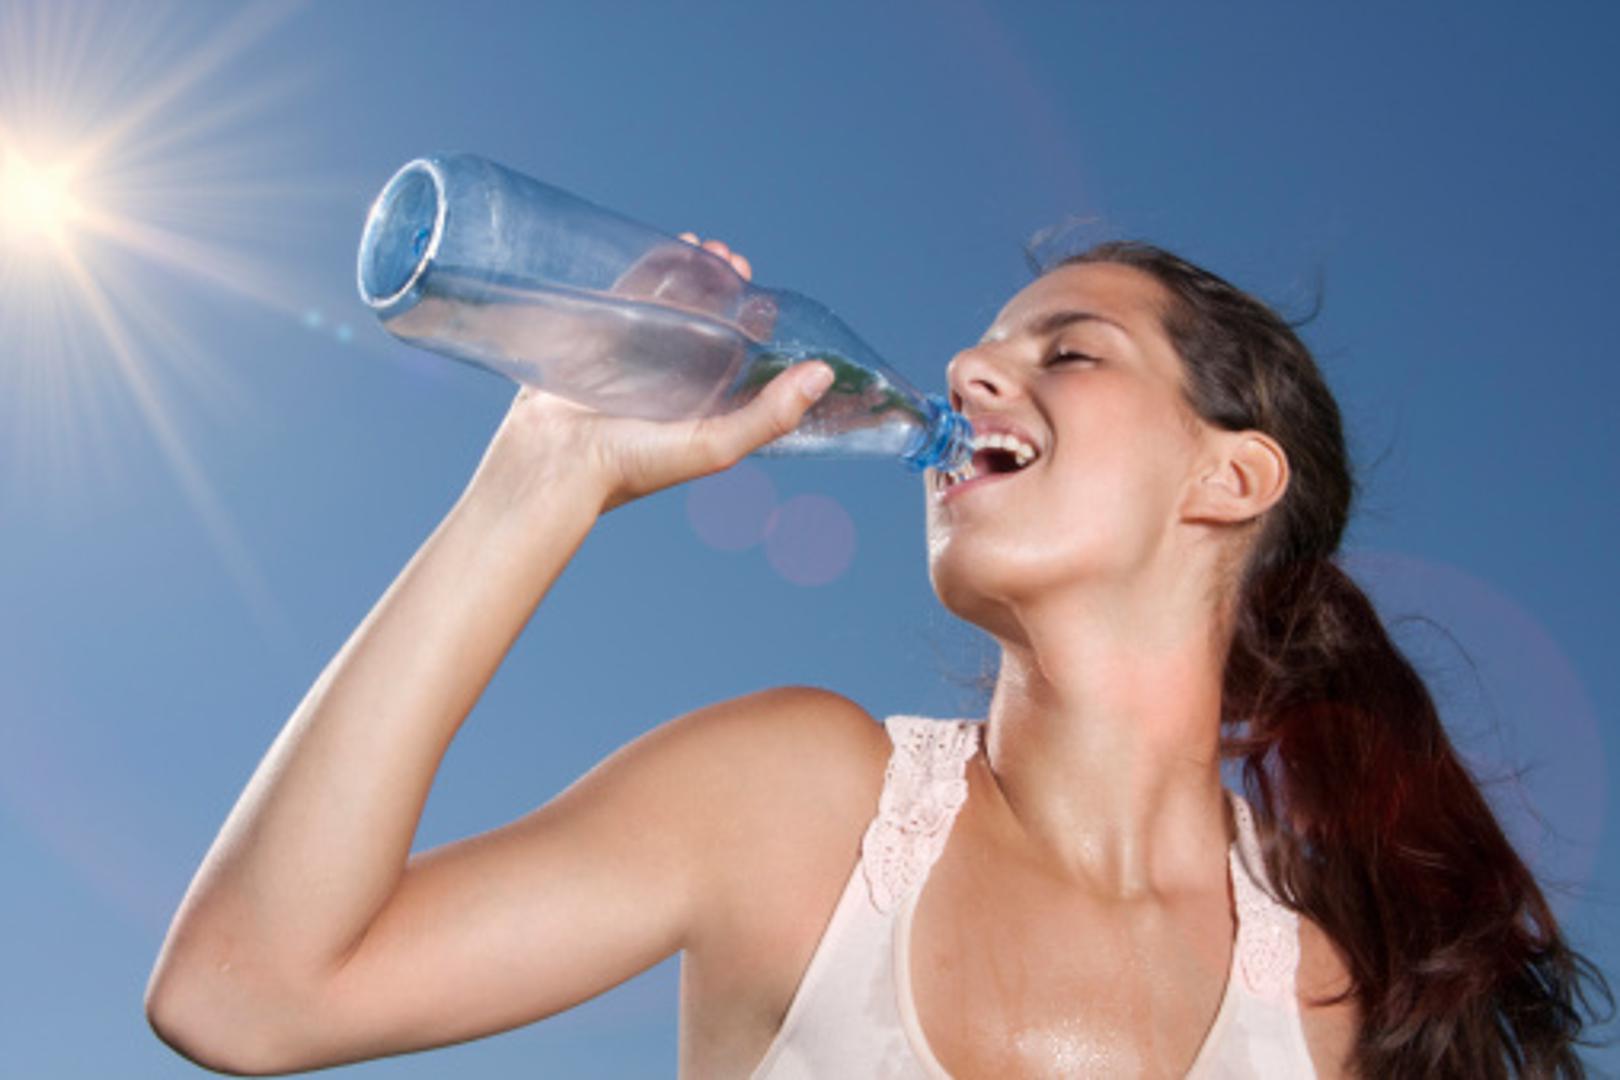 Osam čaša vode ili koliko je zapravo potrebno piti na dan da bi naše tijelo ostalo hidratizirano česta je tema rasprava stručnjaka. Svakako biste trebali popiti između šest i osam čaša vode na dan, a ako je i za vas ta količina prava muka, evo razloga koji bi vas trebali "natjerati" da se prisilite.